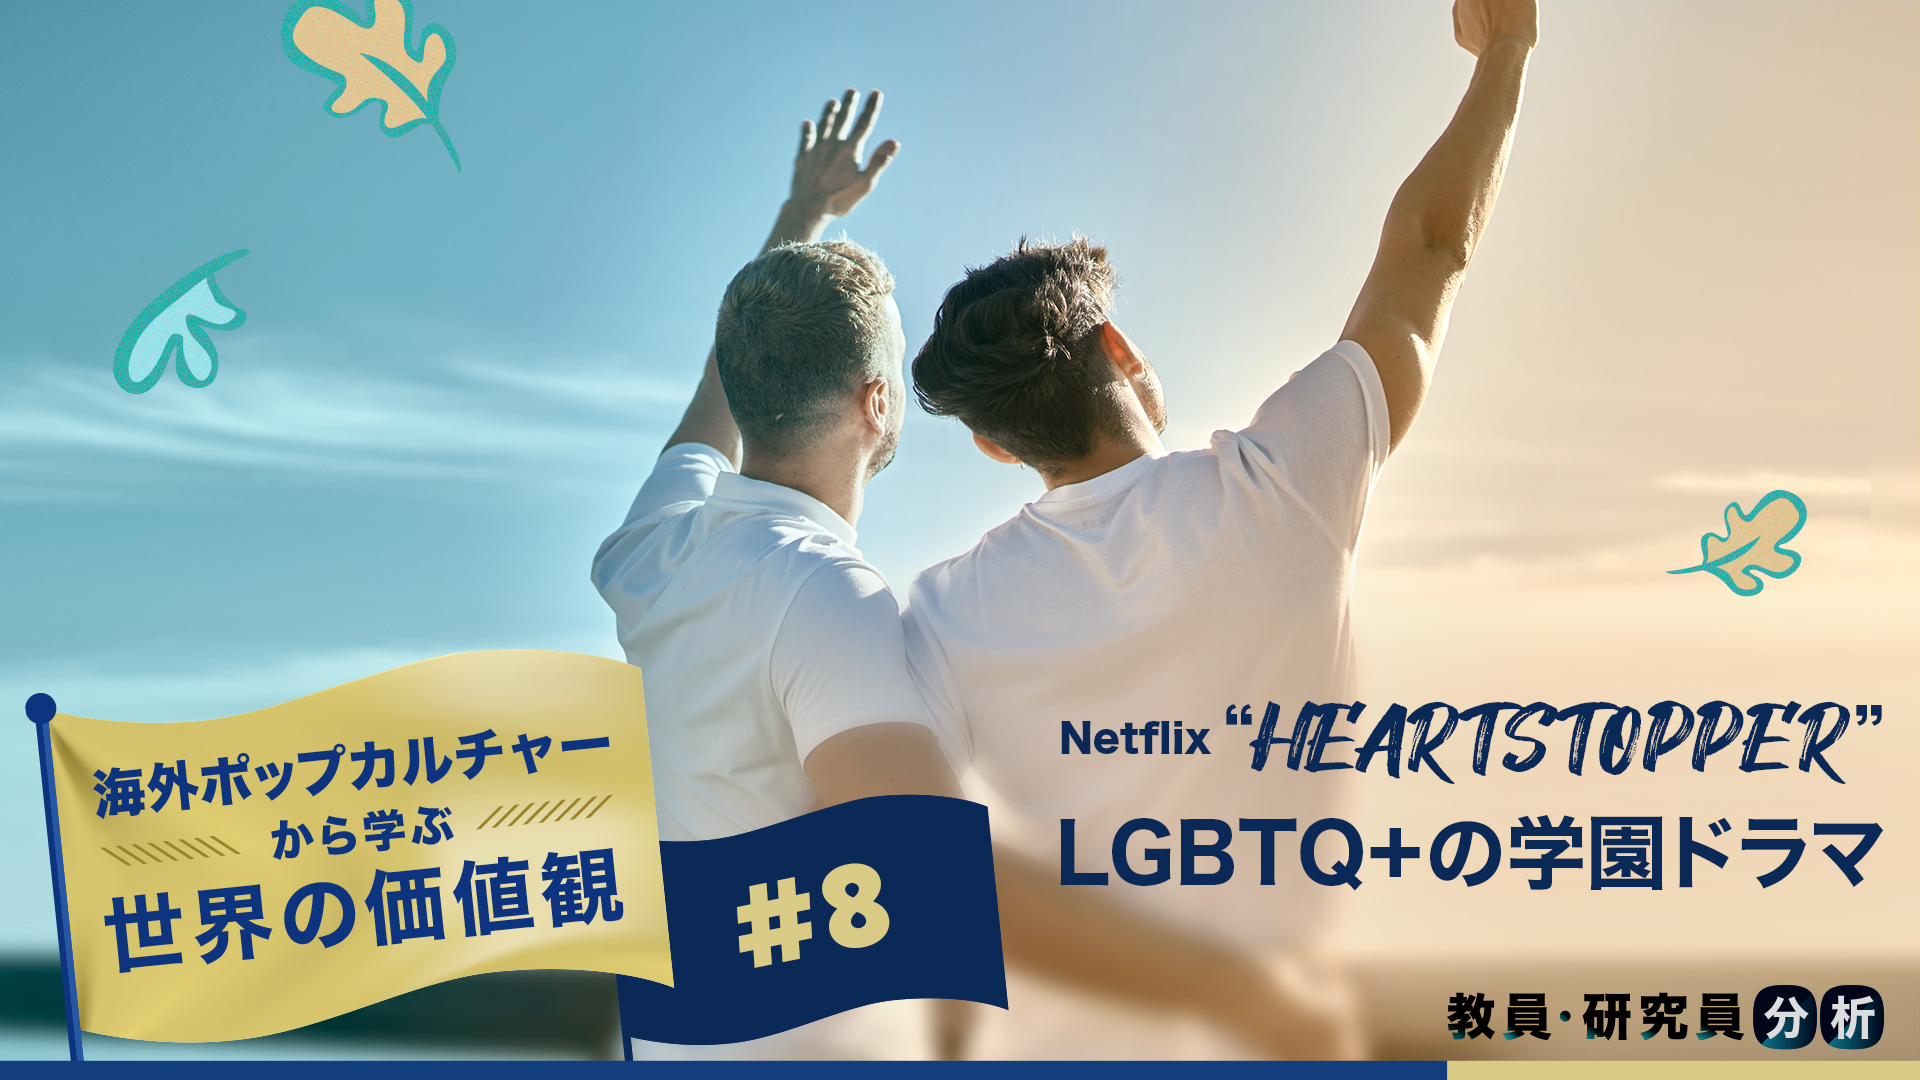 LGBTQ+の恋愛を「普通」に描く学園ドラマNetflix ”ハートストッパー”　海外ポップカルチャーから学ぶ世界の価値観#8